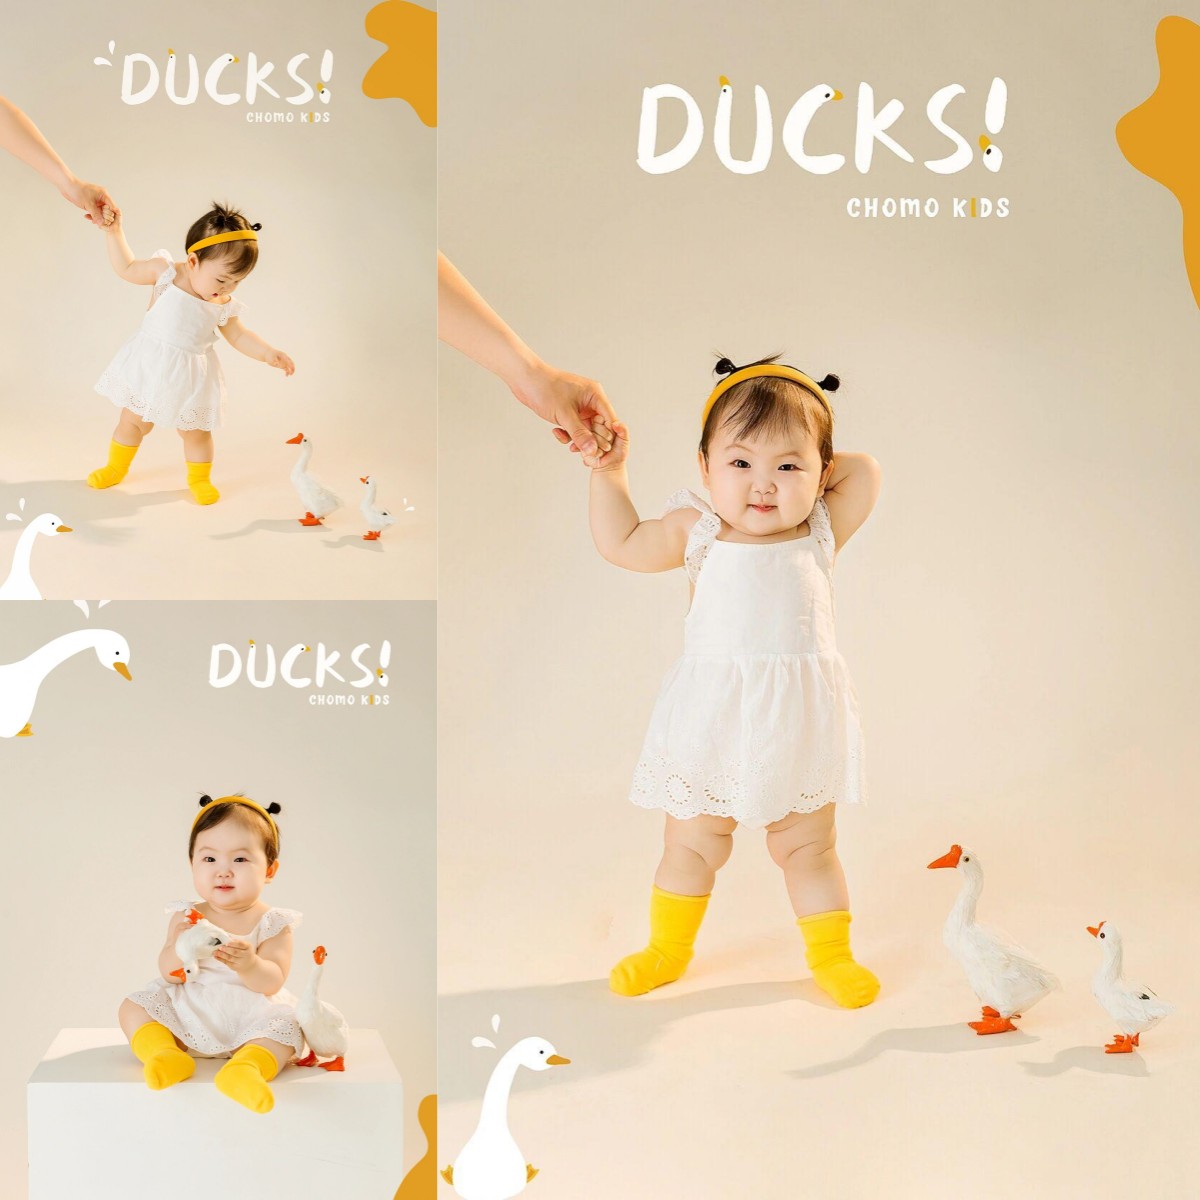 儿童摄影主题服装超级萌的小鸭子周岁照影楼宝宝艺术照拍照服饰